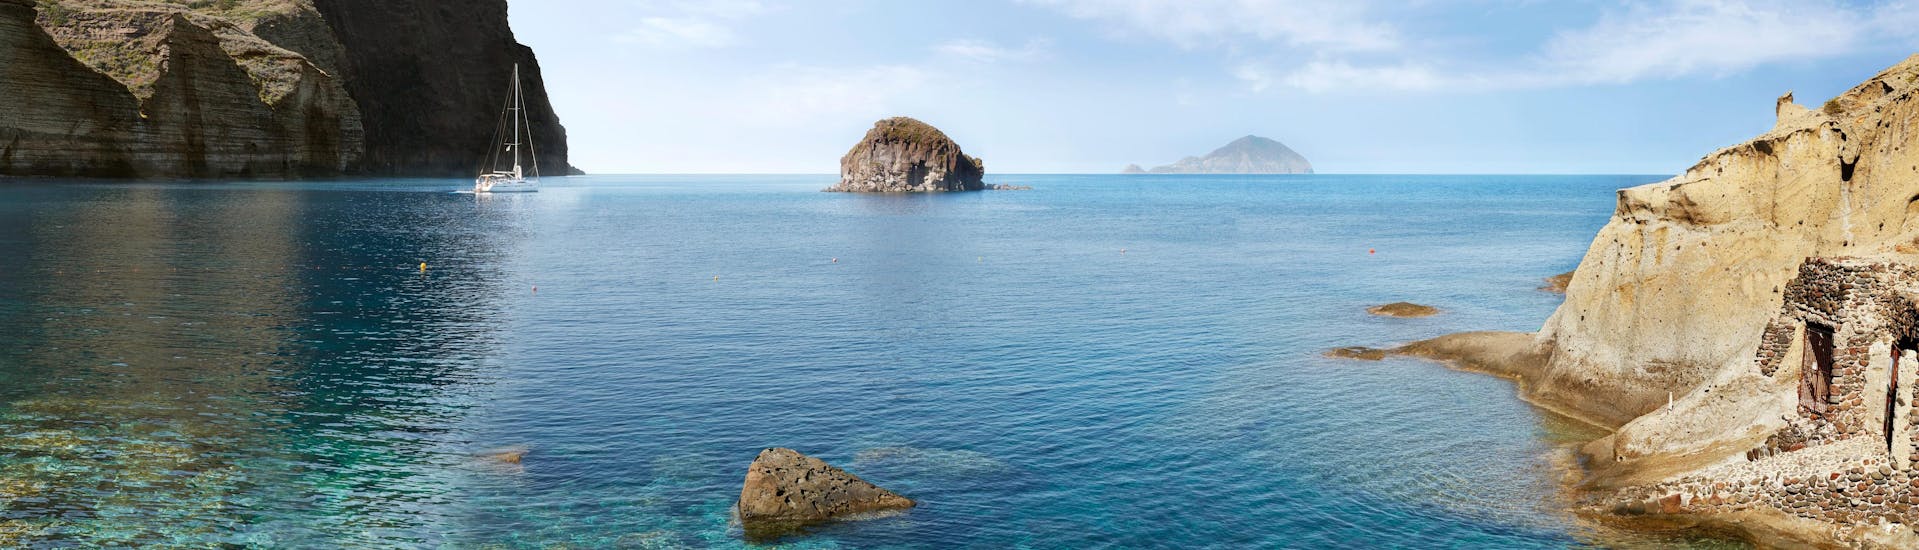 Uitzicht over het prachtige strand van Pollara, dat je kunt bezoeken tijdens een boottocht naar het eiland Salina.